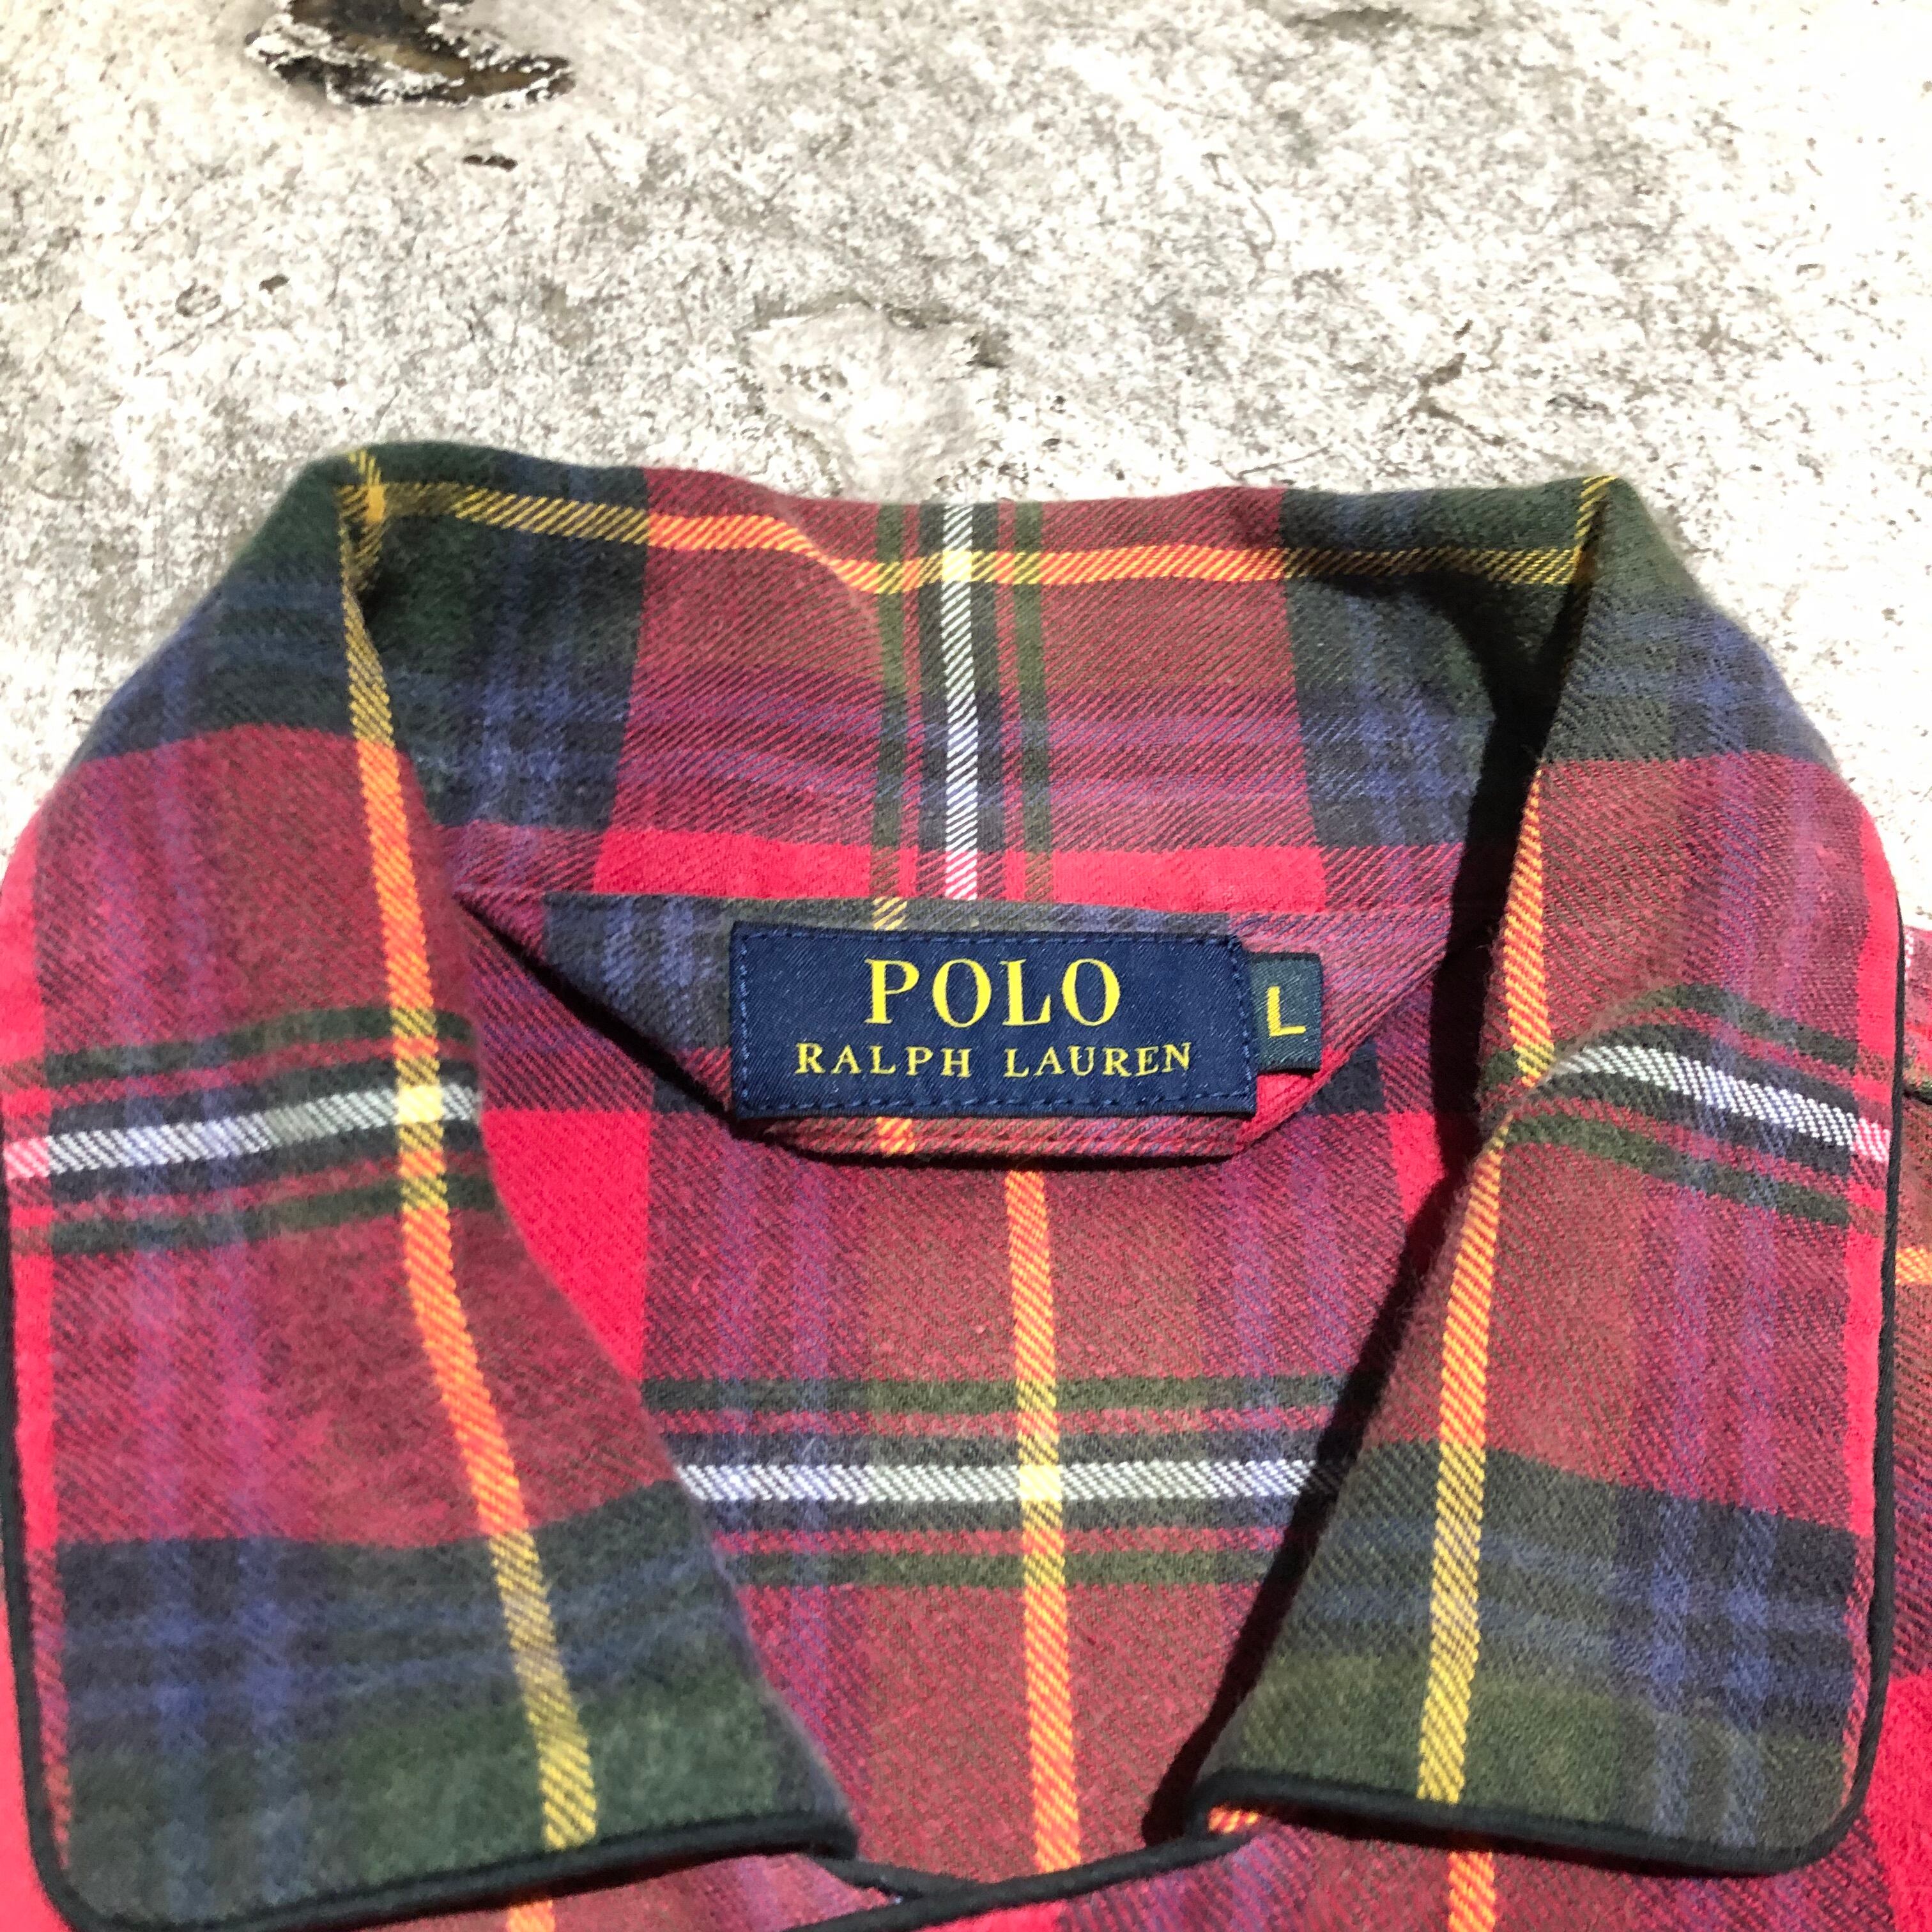 Polo by Ralph Lauren ラルフローレン タータンチェック パジャマL/S 